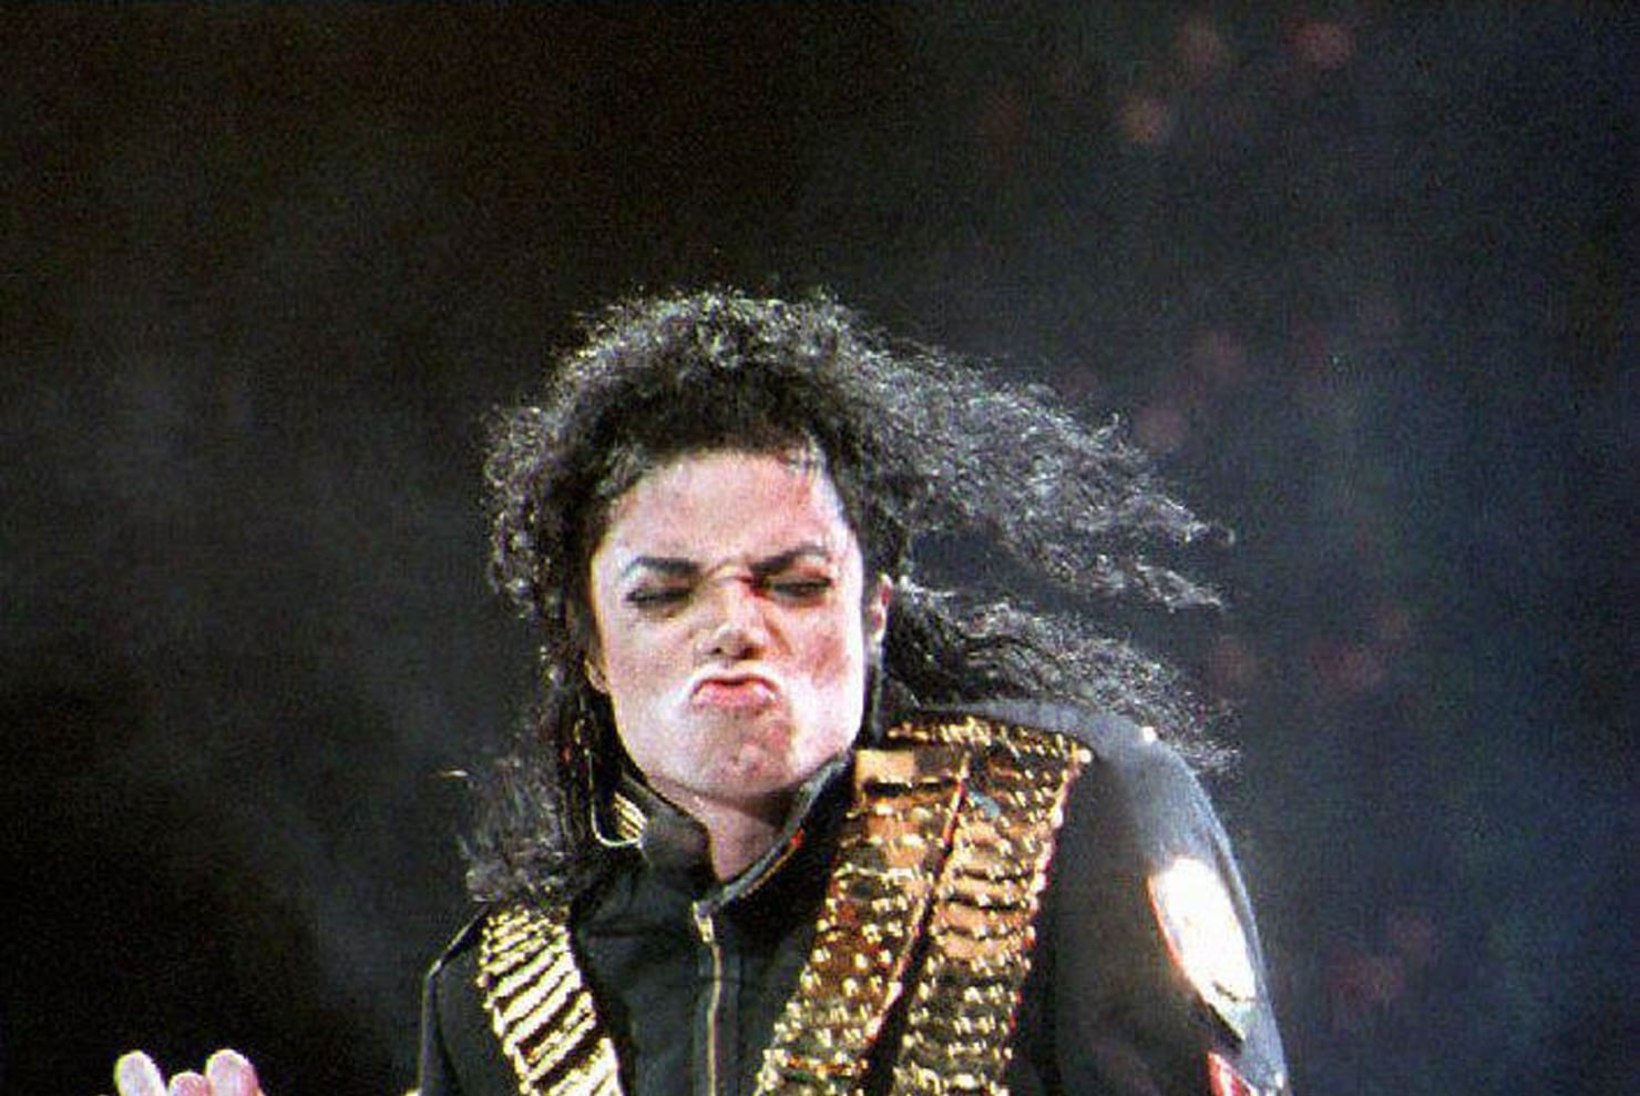 Michael Jacksoni rantšost leiti hulgaliselt lapspornot